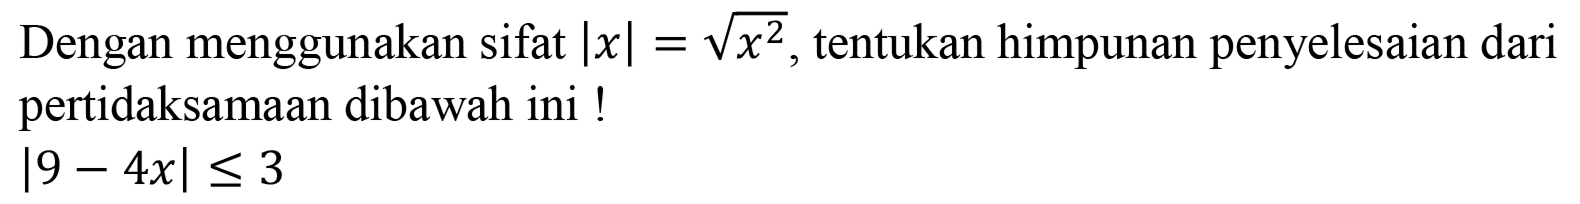 Dengan menggunakan sifat |x|=akar(x^2) , tentukan himpunan penyelesaian dari pertidaksamaan dibawah ini! |9-4x] <= 3